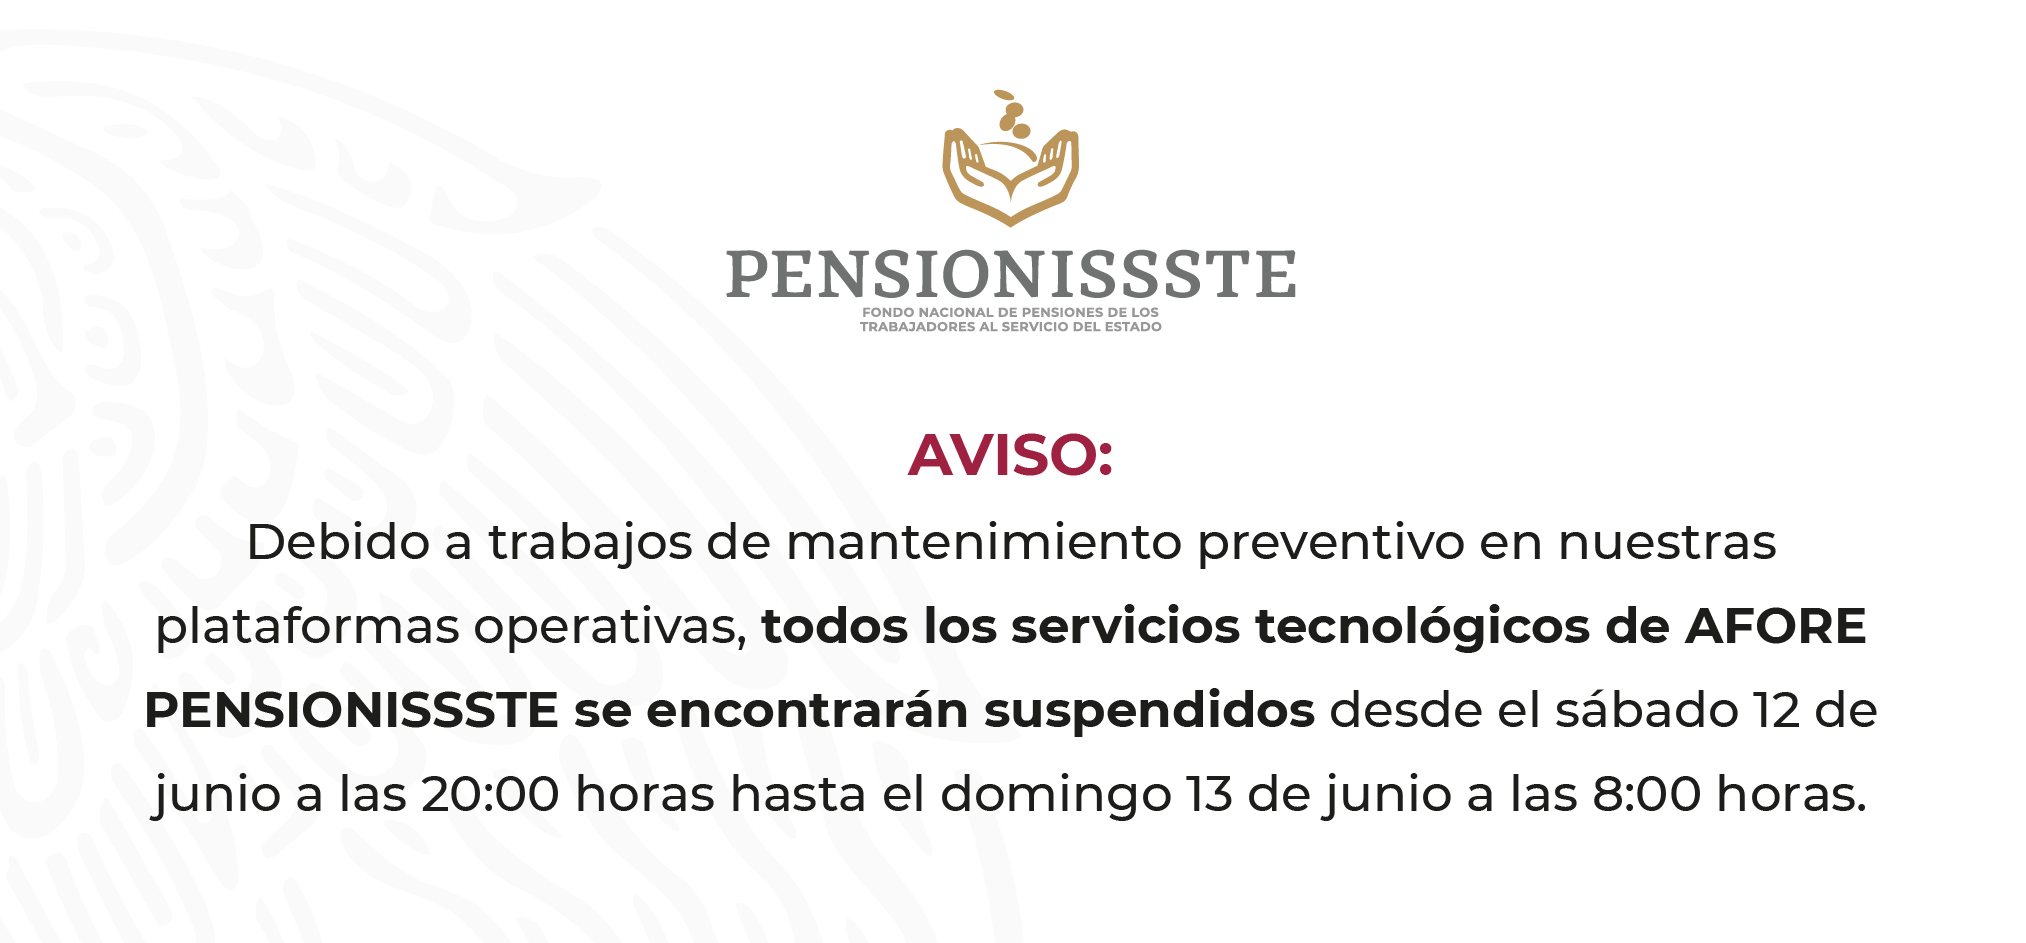 AVISO: Debido a trabajos de mantenimiento preventivo en nuestras plataformas operativas, todos los servicios tecnológicos de AFORE PENSIONISSSTE se encontrarán suspendidos desde el sábado 12 de junio a las 20:00 hasta el domingo 13 de junio a las 8:00